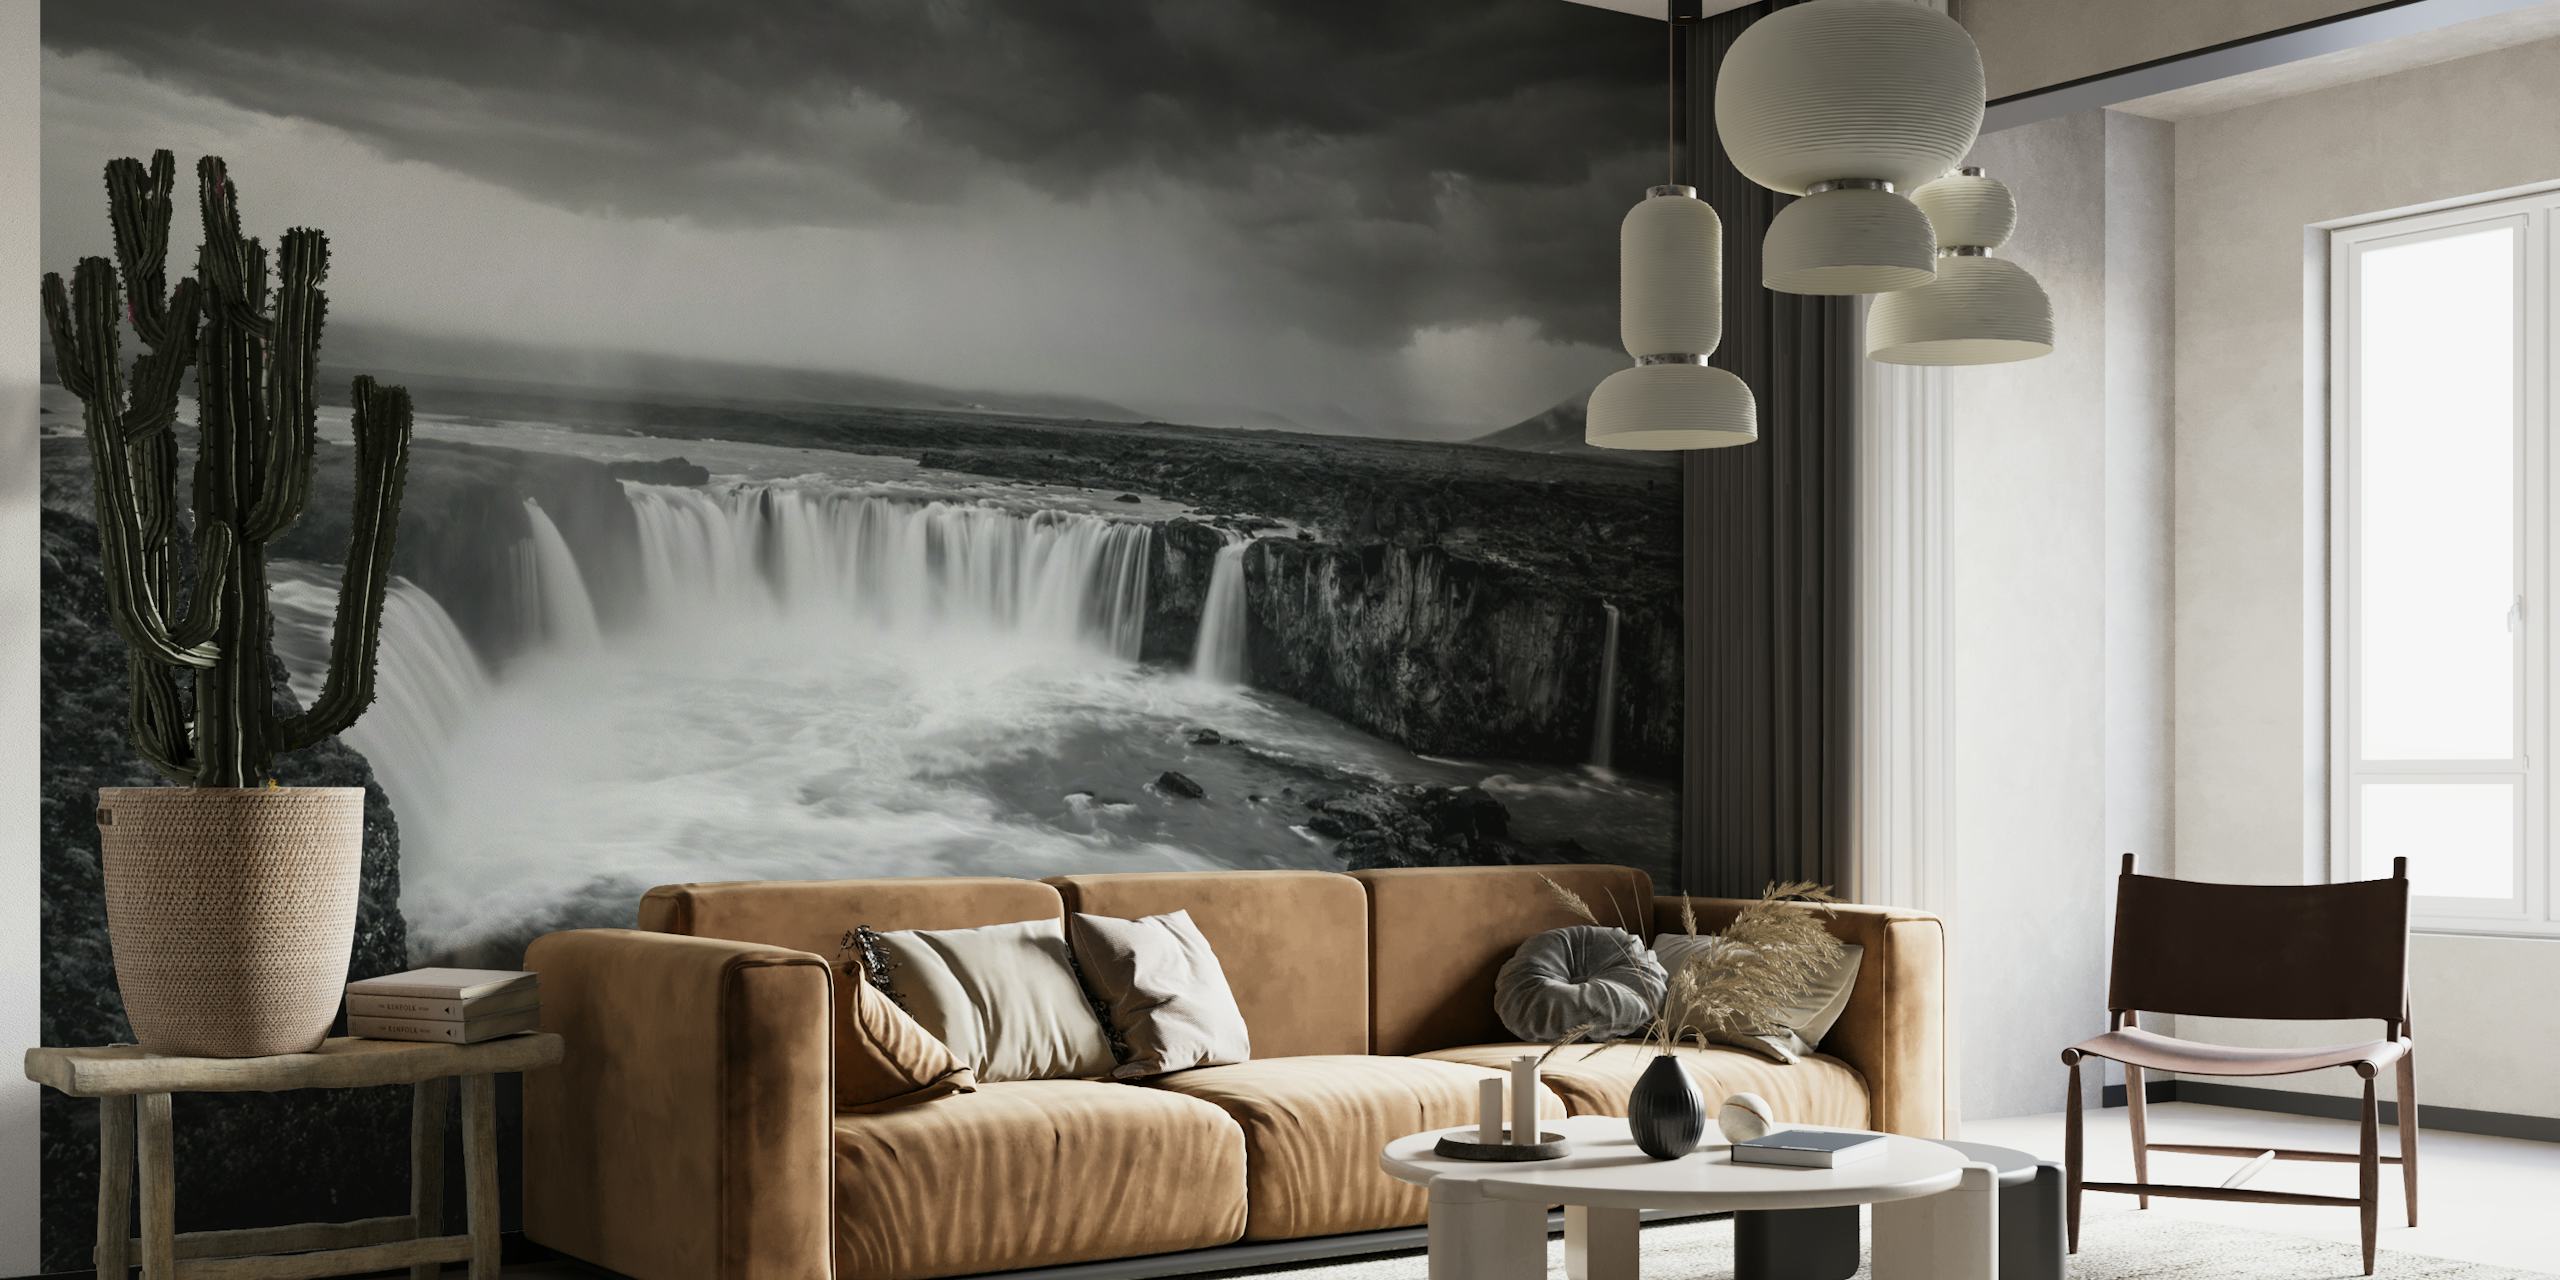 Mural de parede preto e branco de uma poderosa cachoeira sob um céu tempestuoso, evocando uma atmosfera mítica e antiga